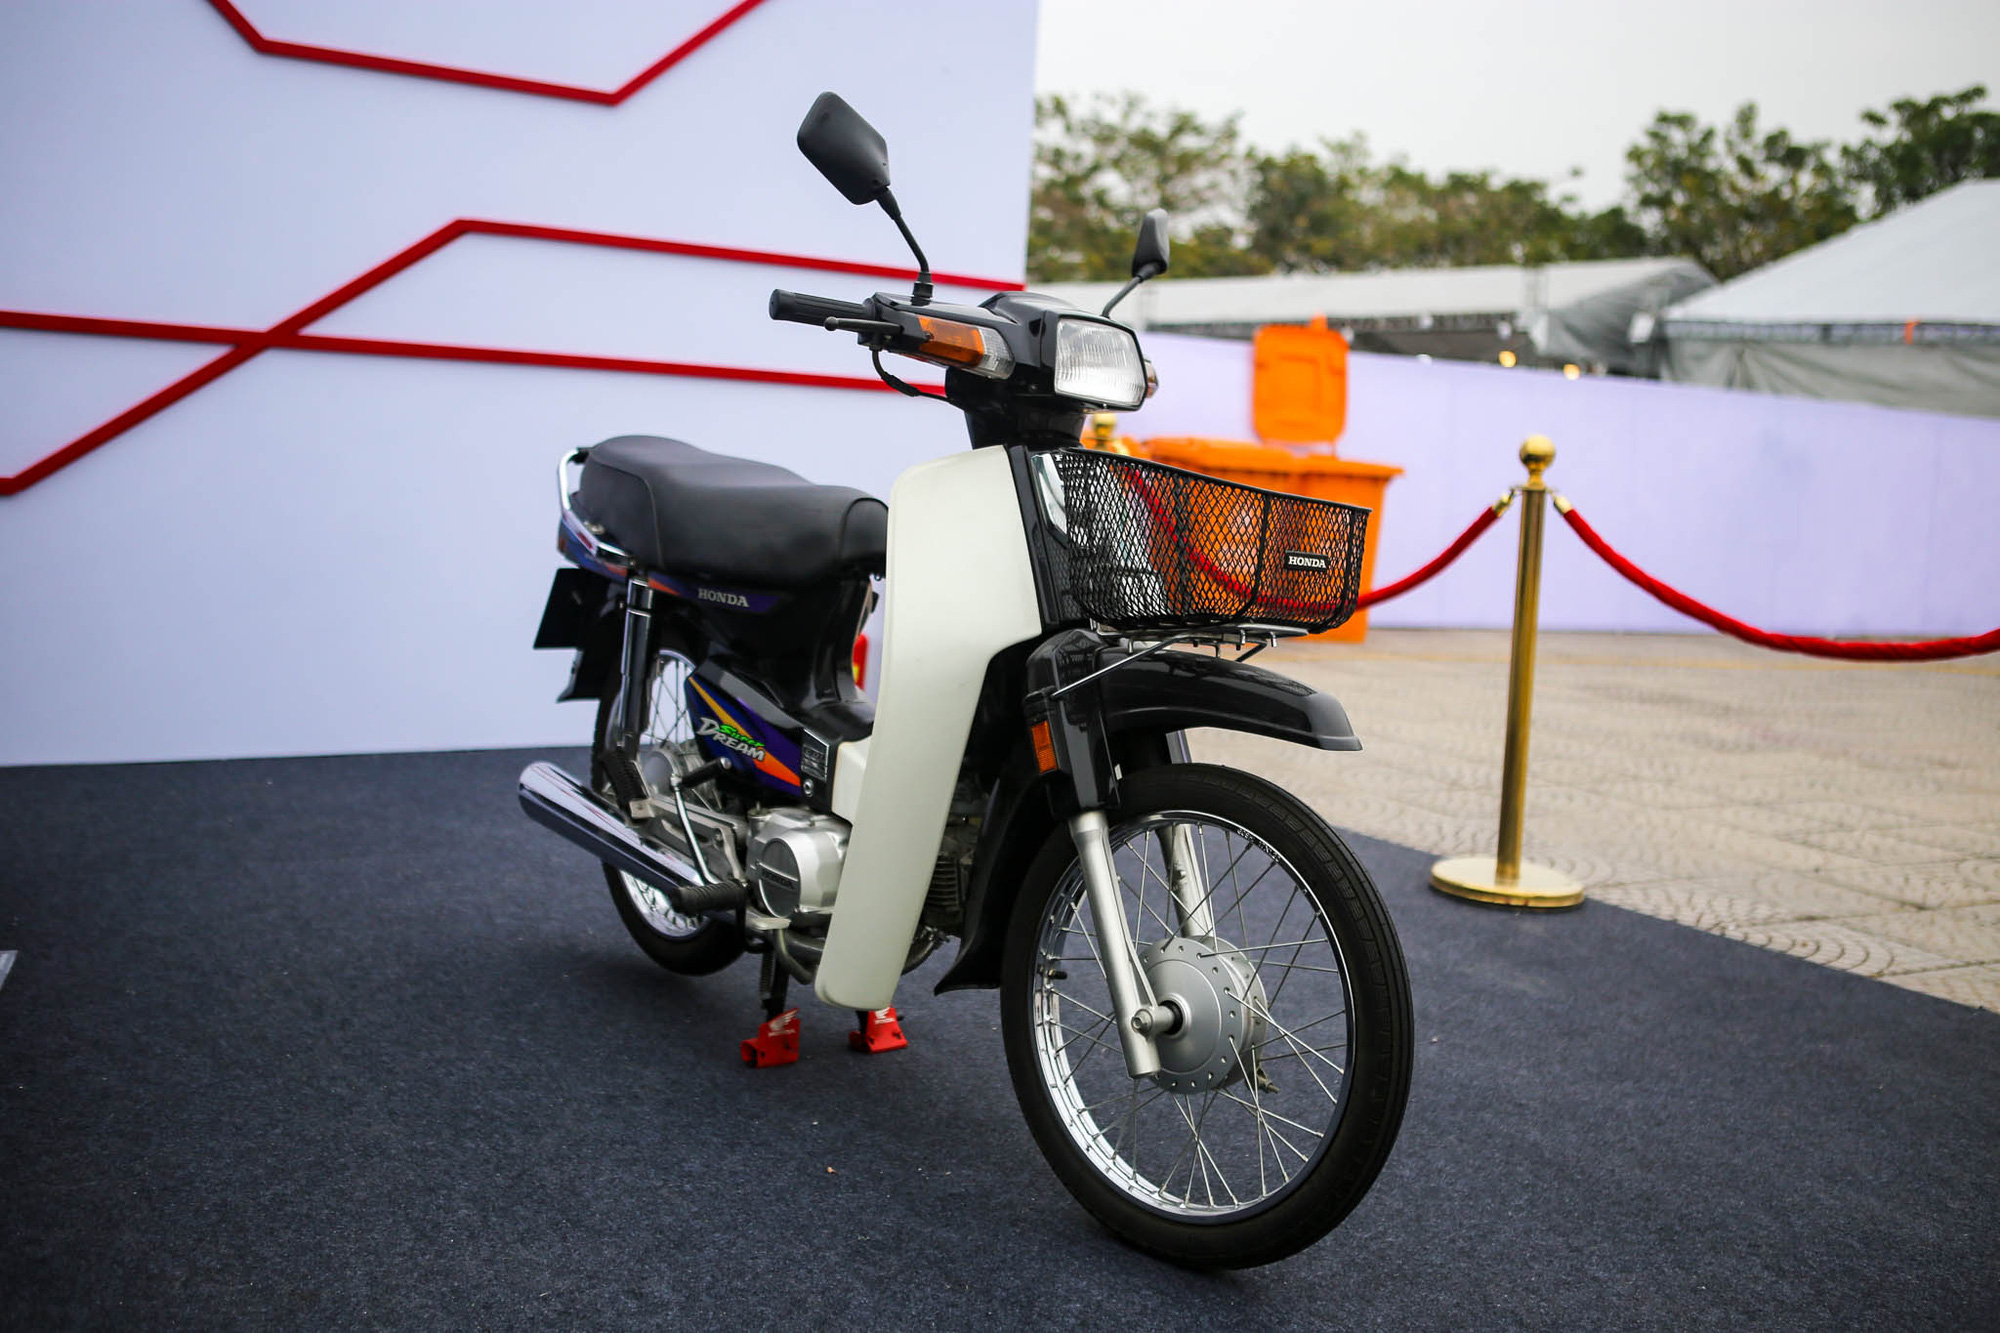 Honda Super Dream - Xe số mang nhiều hồi ức của người Việt